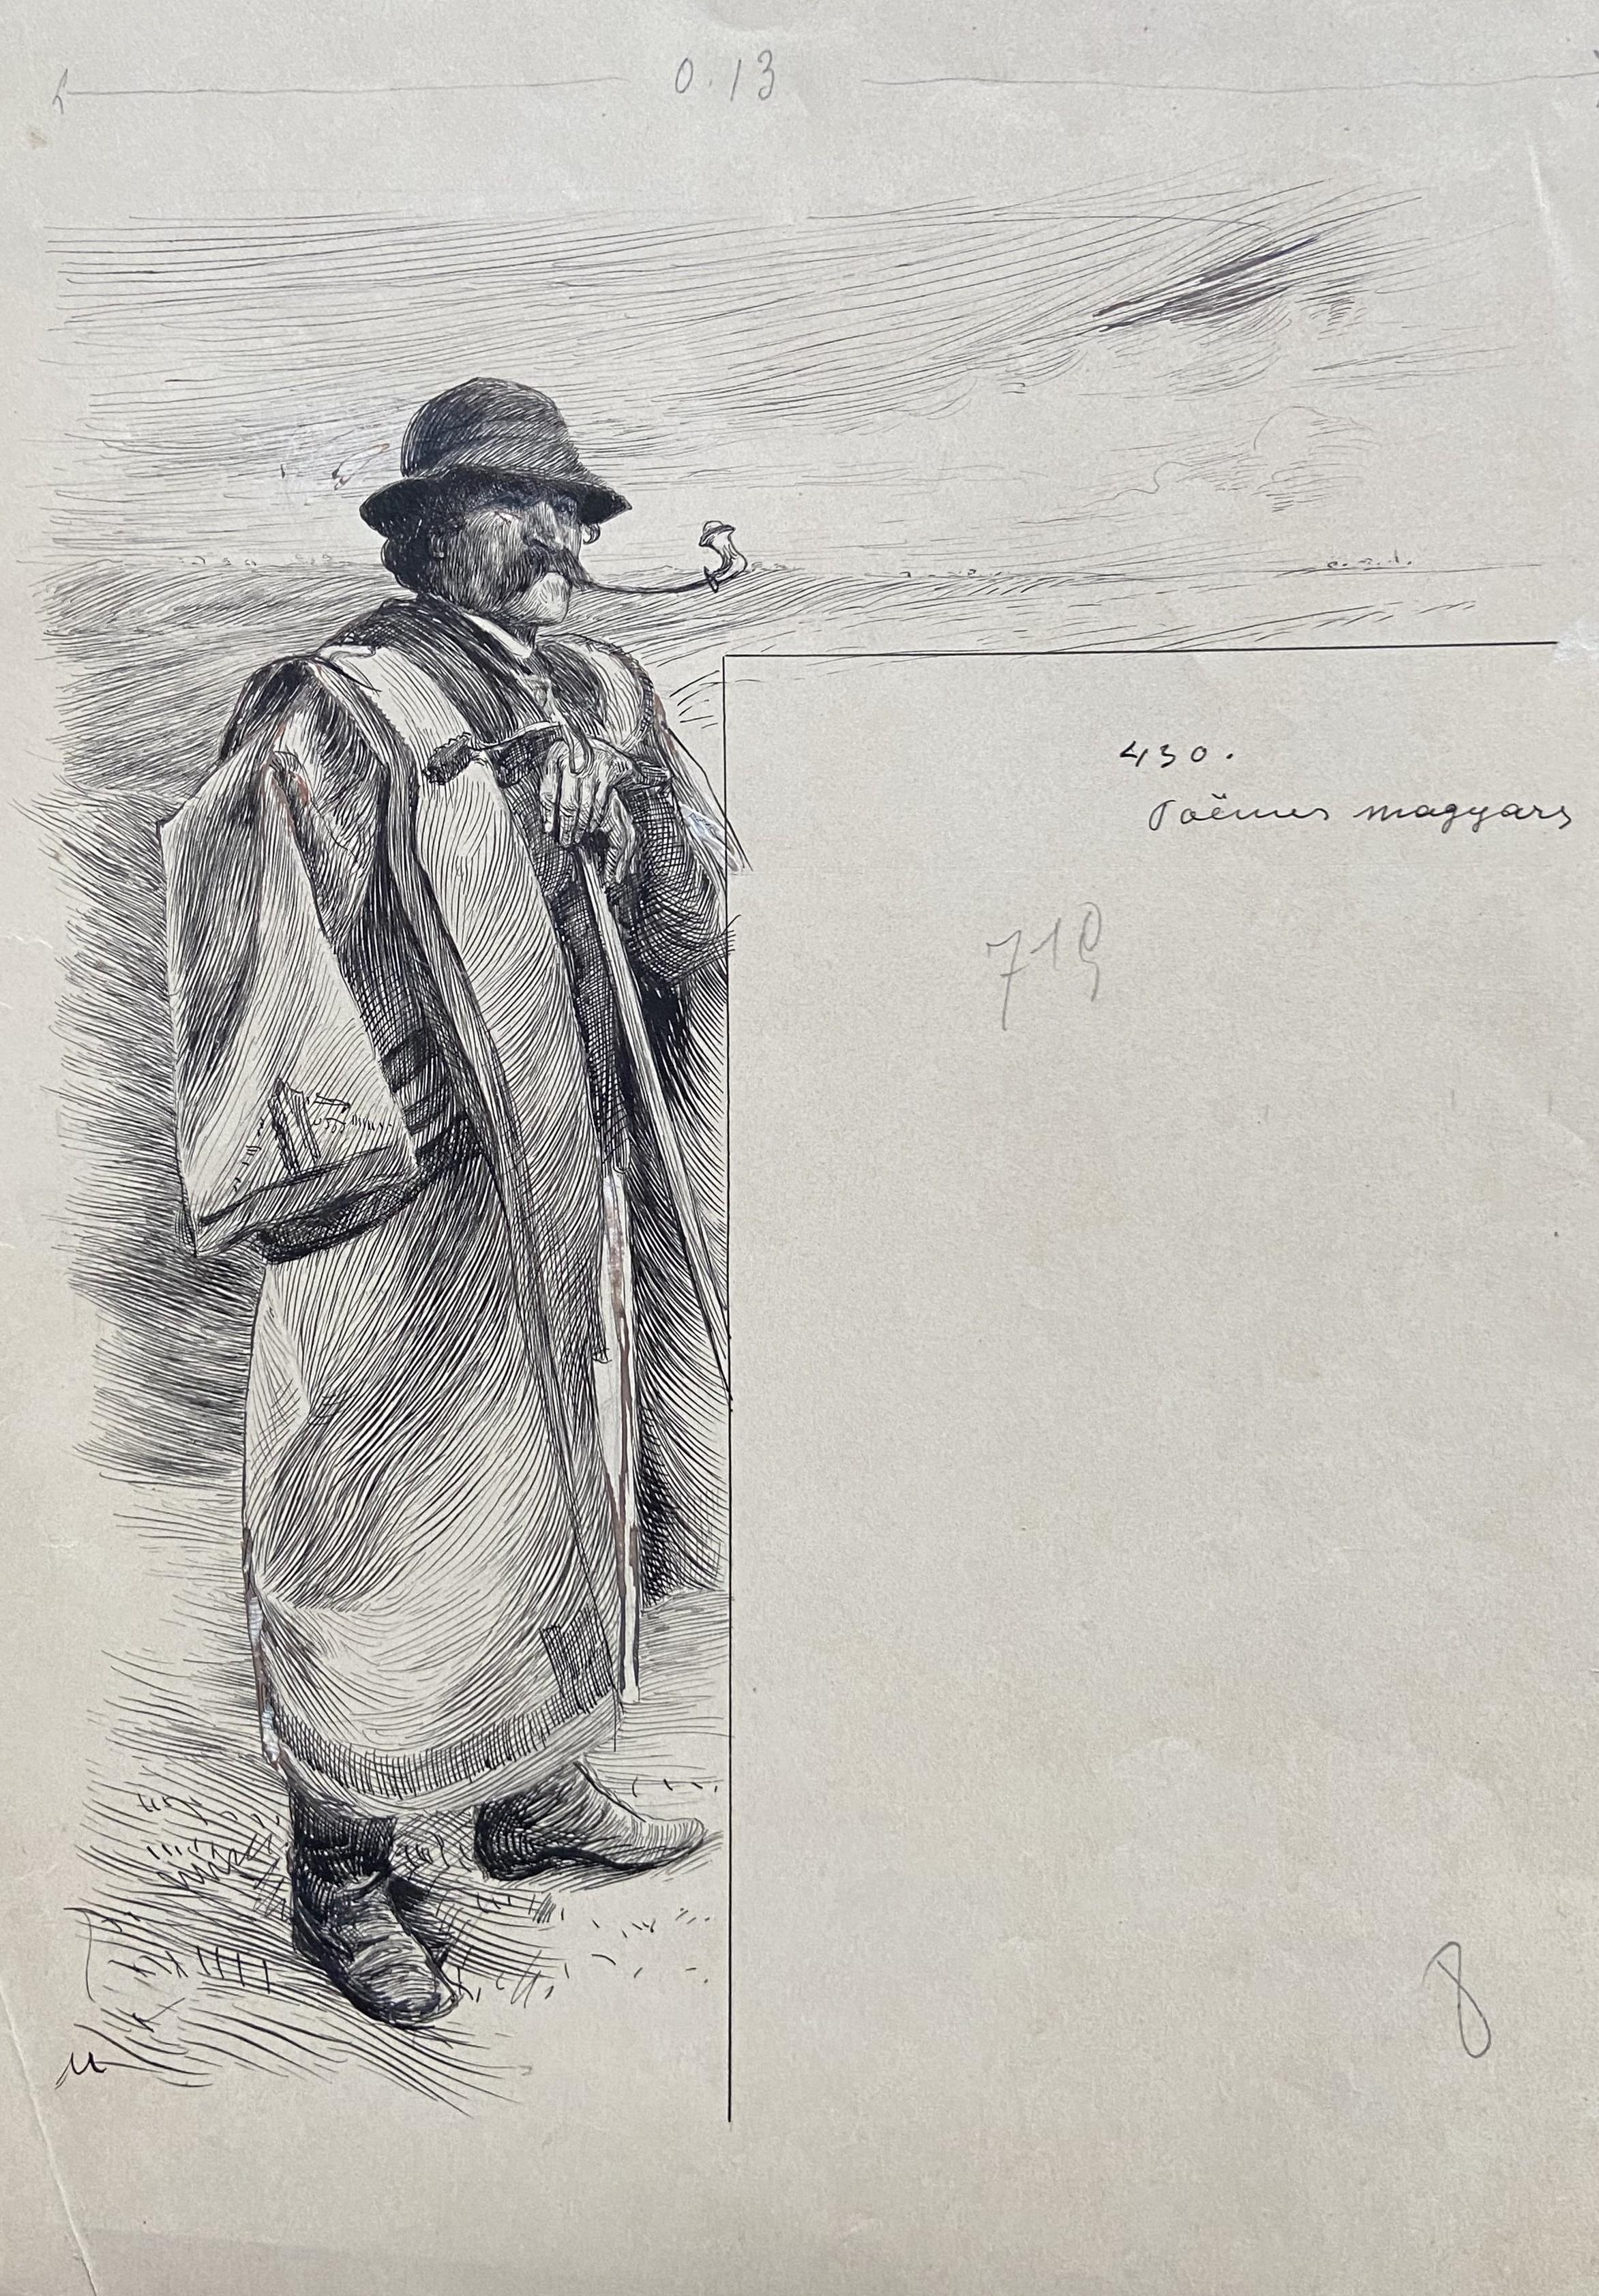 Felician Myrbach (1853-1940) 
Poèmes magyars, Magyarische Gedichte
trägt unten links das Monogramm "M", oben rechts den Titel
Tinte auf Papier
29,8 x 19,8 cm
in gutem Zustand, das Blatt ist leicht vergilbt
In einem modernen Rahmen : 33 x 23 cm

Dies